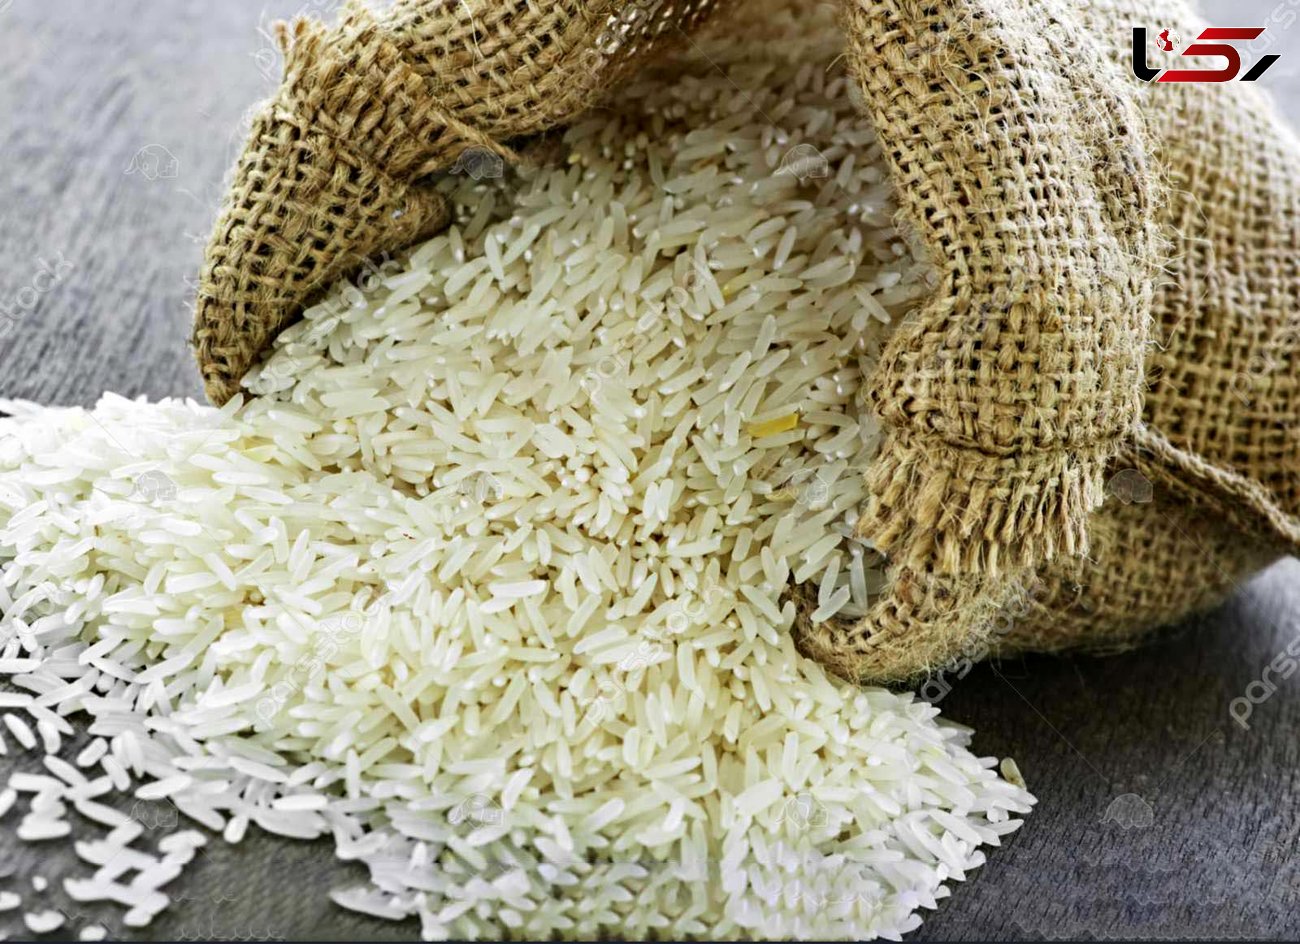 ابلاغ مصوبه واردات برنج با تعرفه 4 درصدی + سند